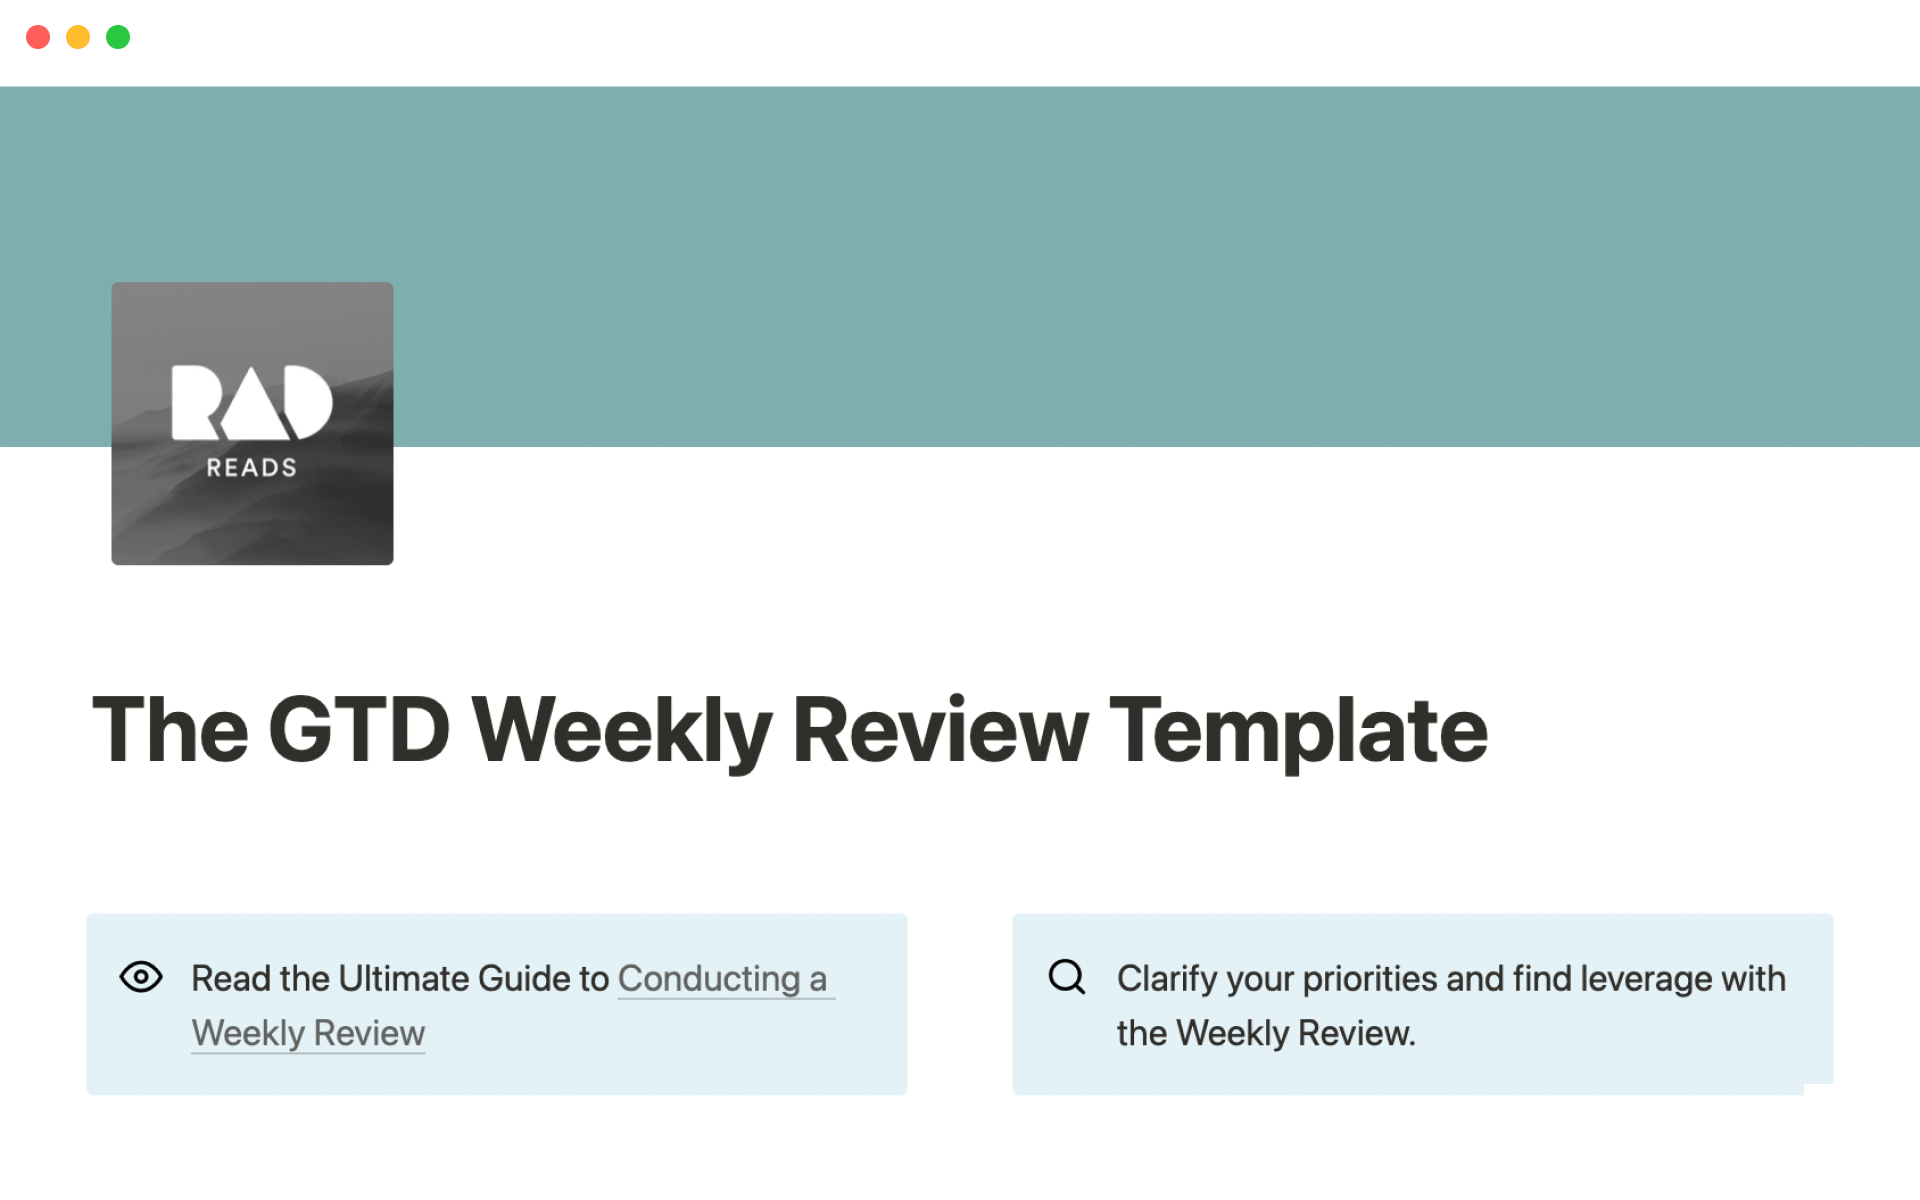 Eine Vorlagenvorschau für GTD weekly review